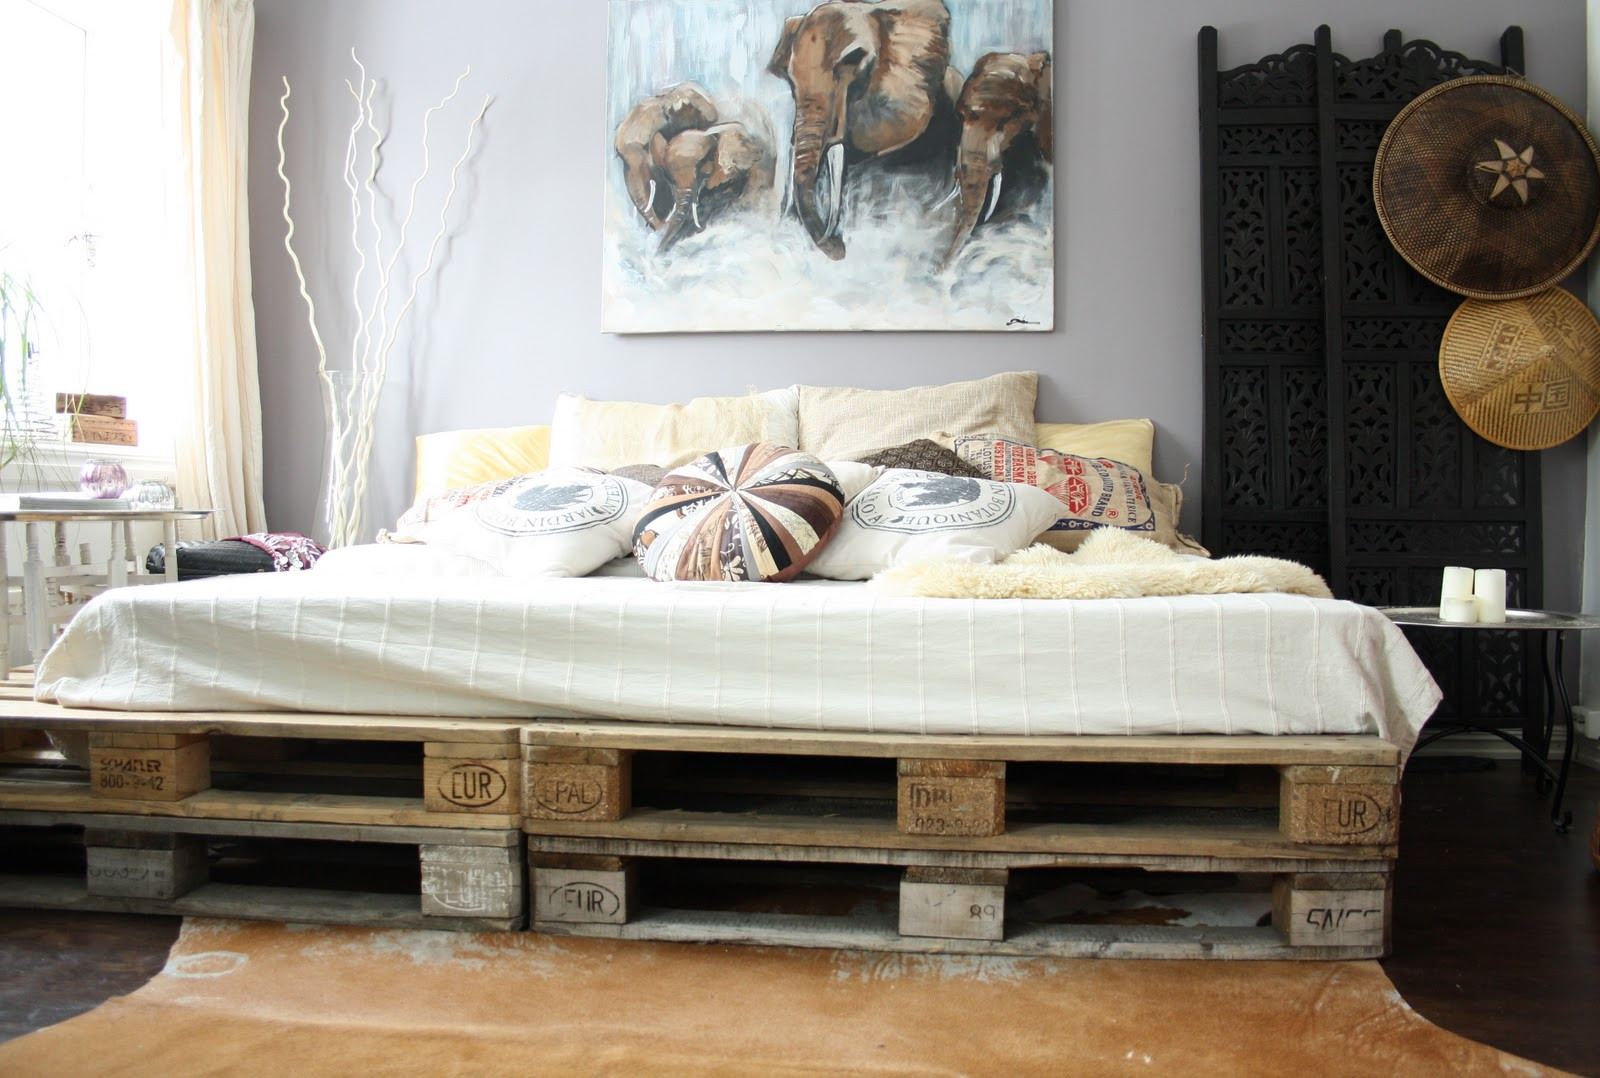 Best ideas about Cheap DIY Bed Frame
. Save or Pin Tijd voor een nieuw bed Wat dacht je van een palletbed Now.